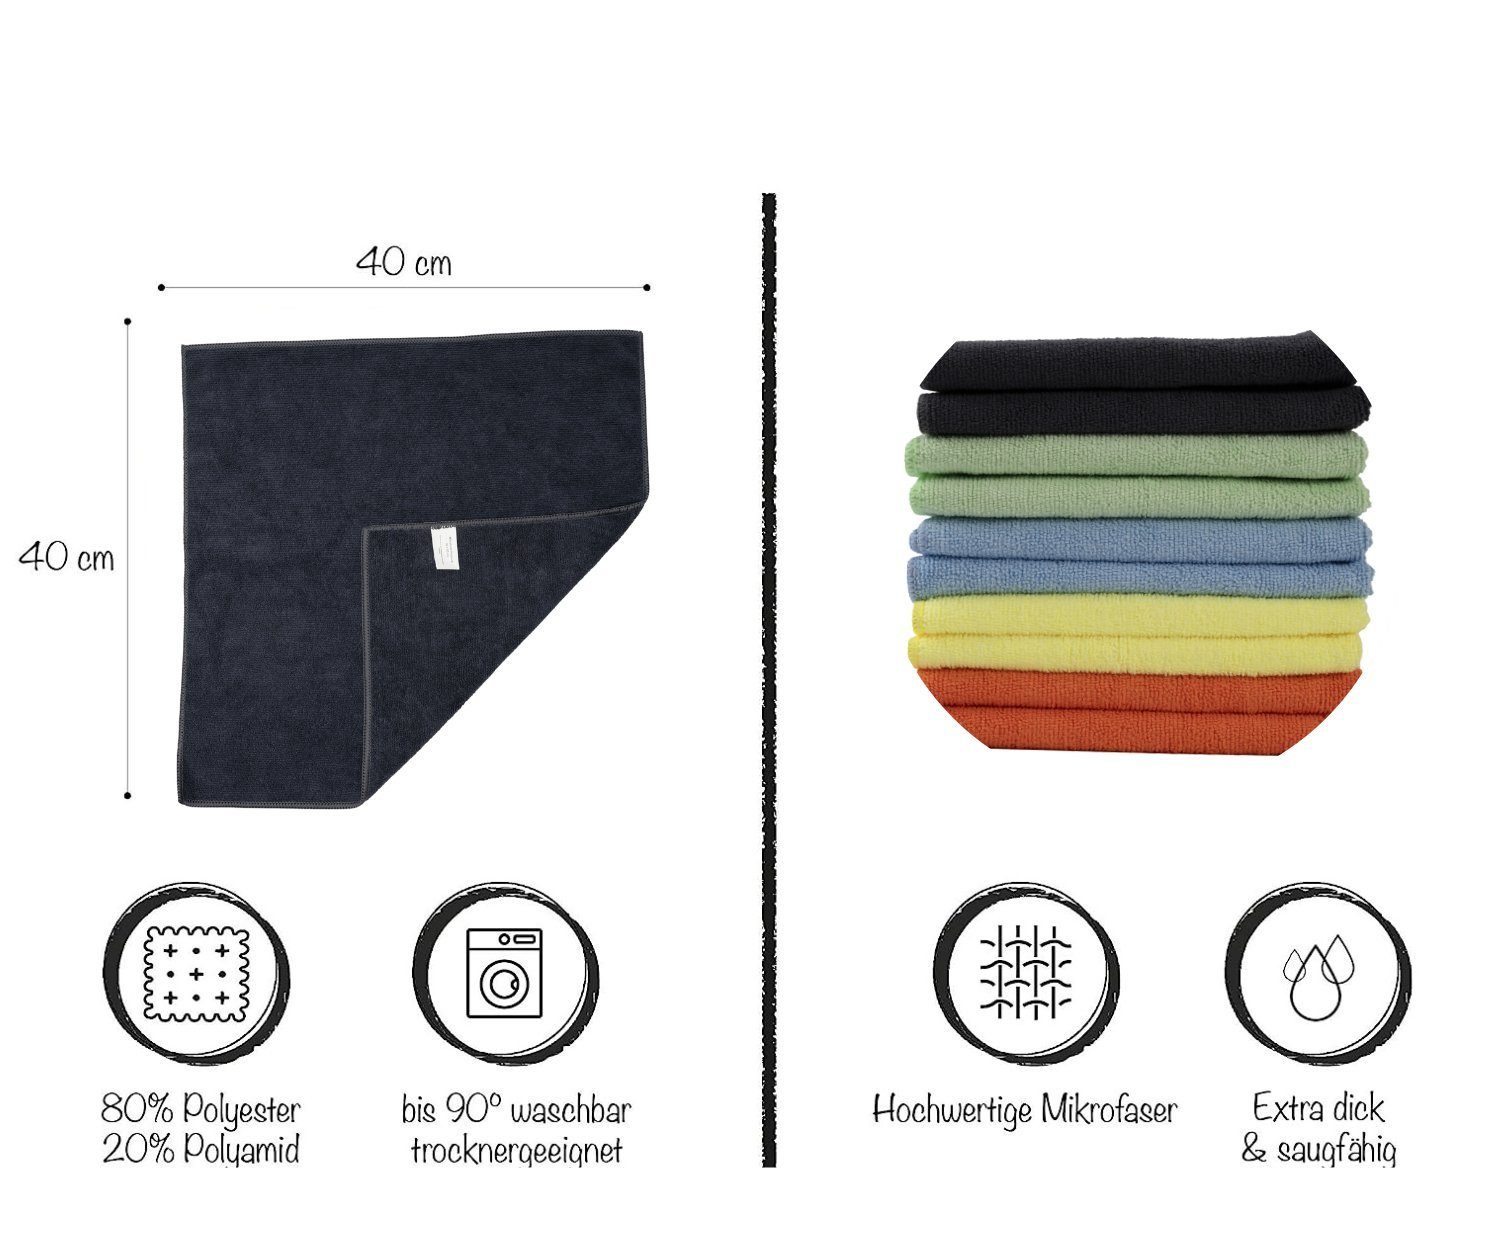 Hometex Premium Textiles Geschirrtuch Mikrofaser Barista Ideal und Küche (10-tlg), cm, 40 Putztuch, für 40 MIX Autopflege, Staubtuch x Reinigungstuch